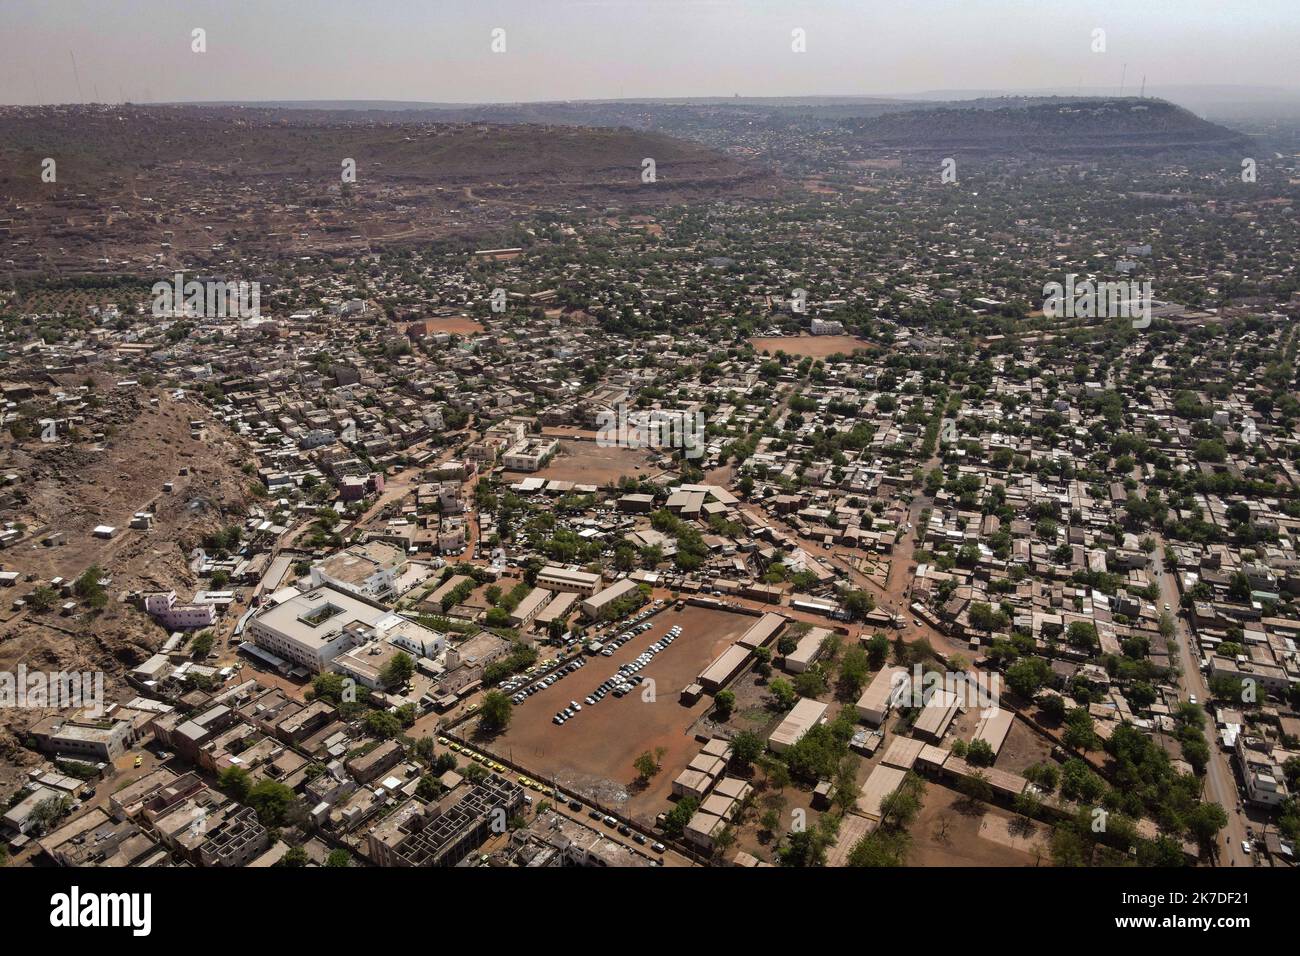 ©Nicolas Remene / Le Pictorium/MAXPPP - Nicolas Remene / Le Pictorium - 11/5/2021 - Mali / District de Bamako / Bamako - Vue eyrienne de Bamako depuis la colline de Lassa. La capitale malienne possede la plus grande croissance urbaine de tout le continent, un veritable defi d'urbanisme concernant les Plans d'Extension de la ville en peine essor.. / 11/5/2021 - Mali / Bamako District / Bamako - Luftaufnahme von Bamako vom Lassa Hill. Die malische Hauptstadt hat das größte städtische Wachstum auf dem Kontinent, eine echte städtebauliche Herausforderung für die Expansionspläne der Stadt. Stockfoto